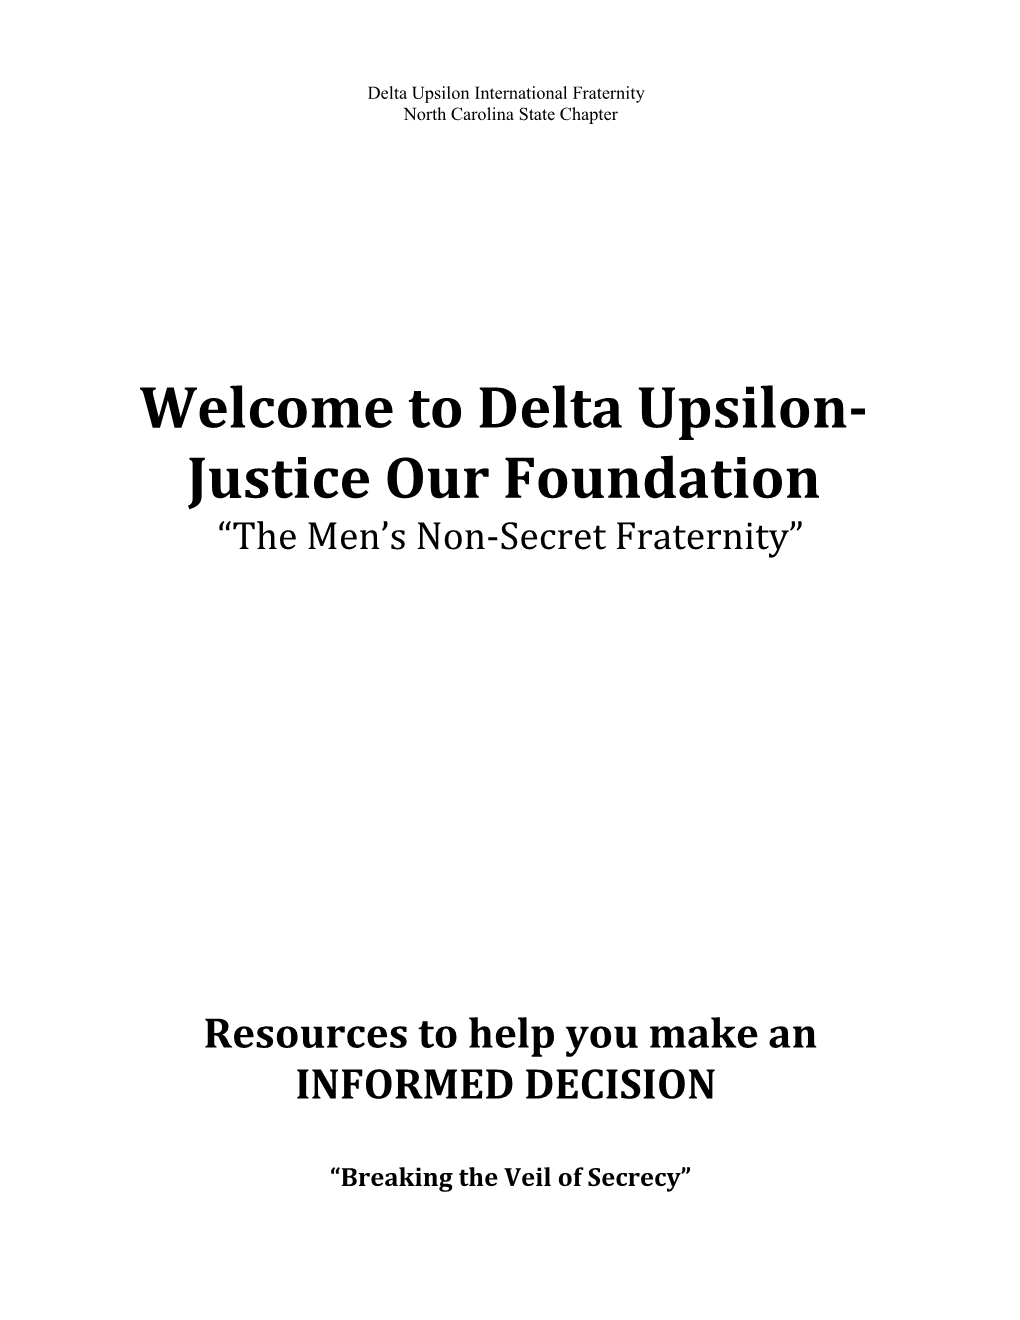 Welcome to Delta Upsilon